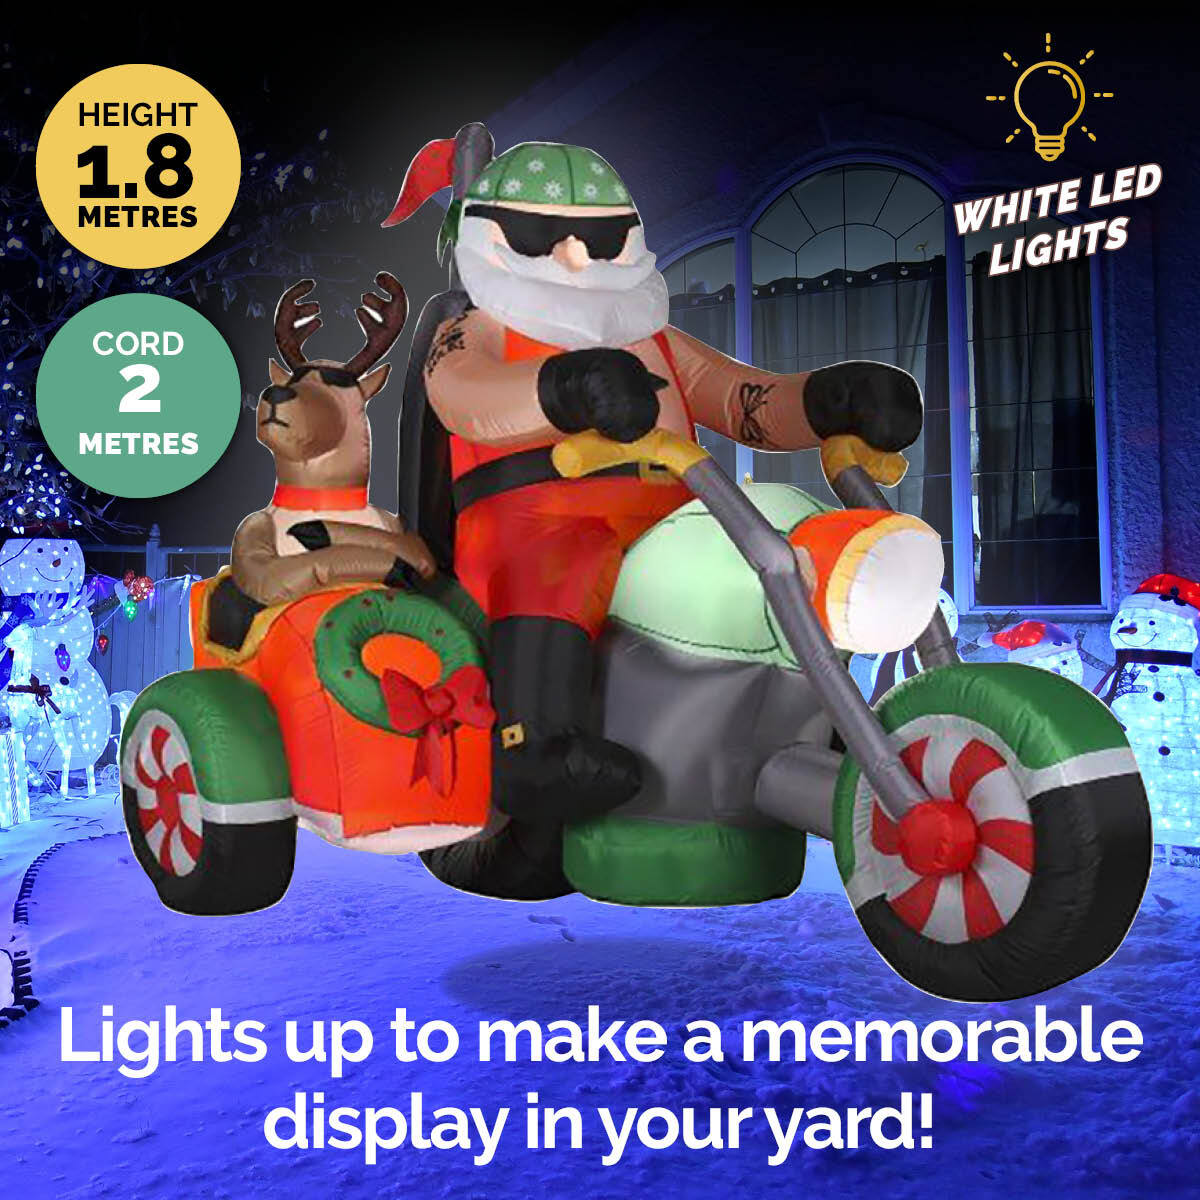 Christmas By Sas 1.8m Santa Reindeer & Trike Built-In Blower LED Lighting